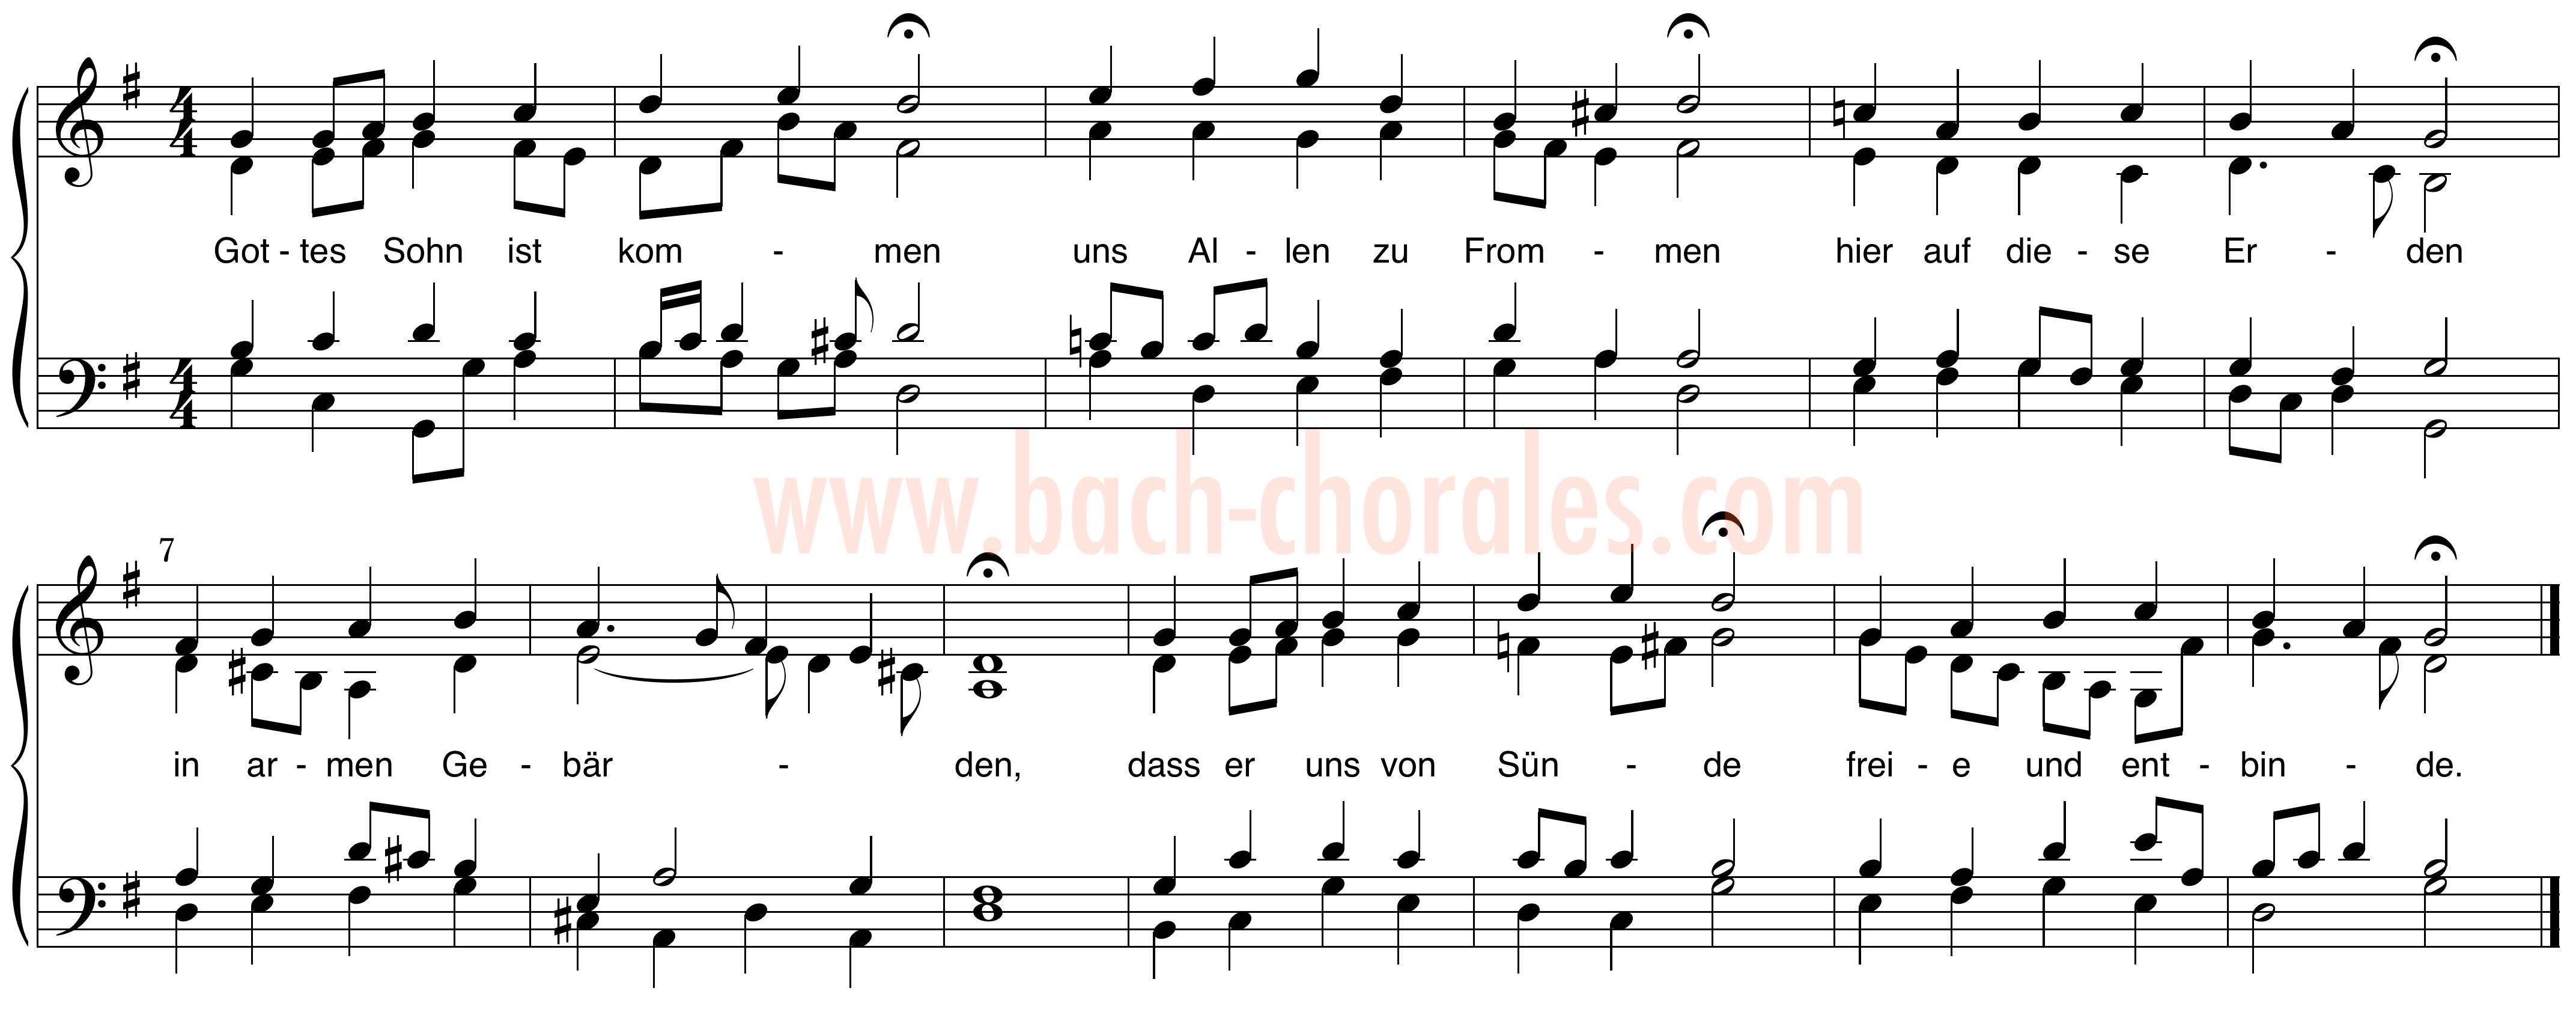 notenbeeld BWV 318 op https://www.bach-chorales.com/